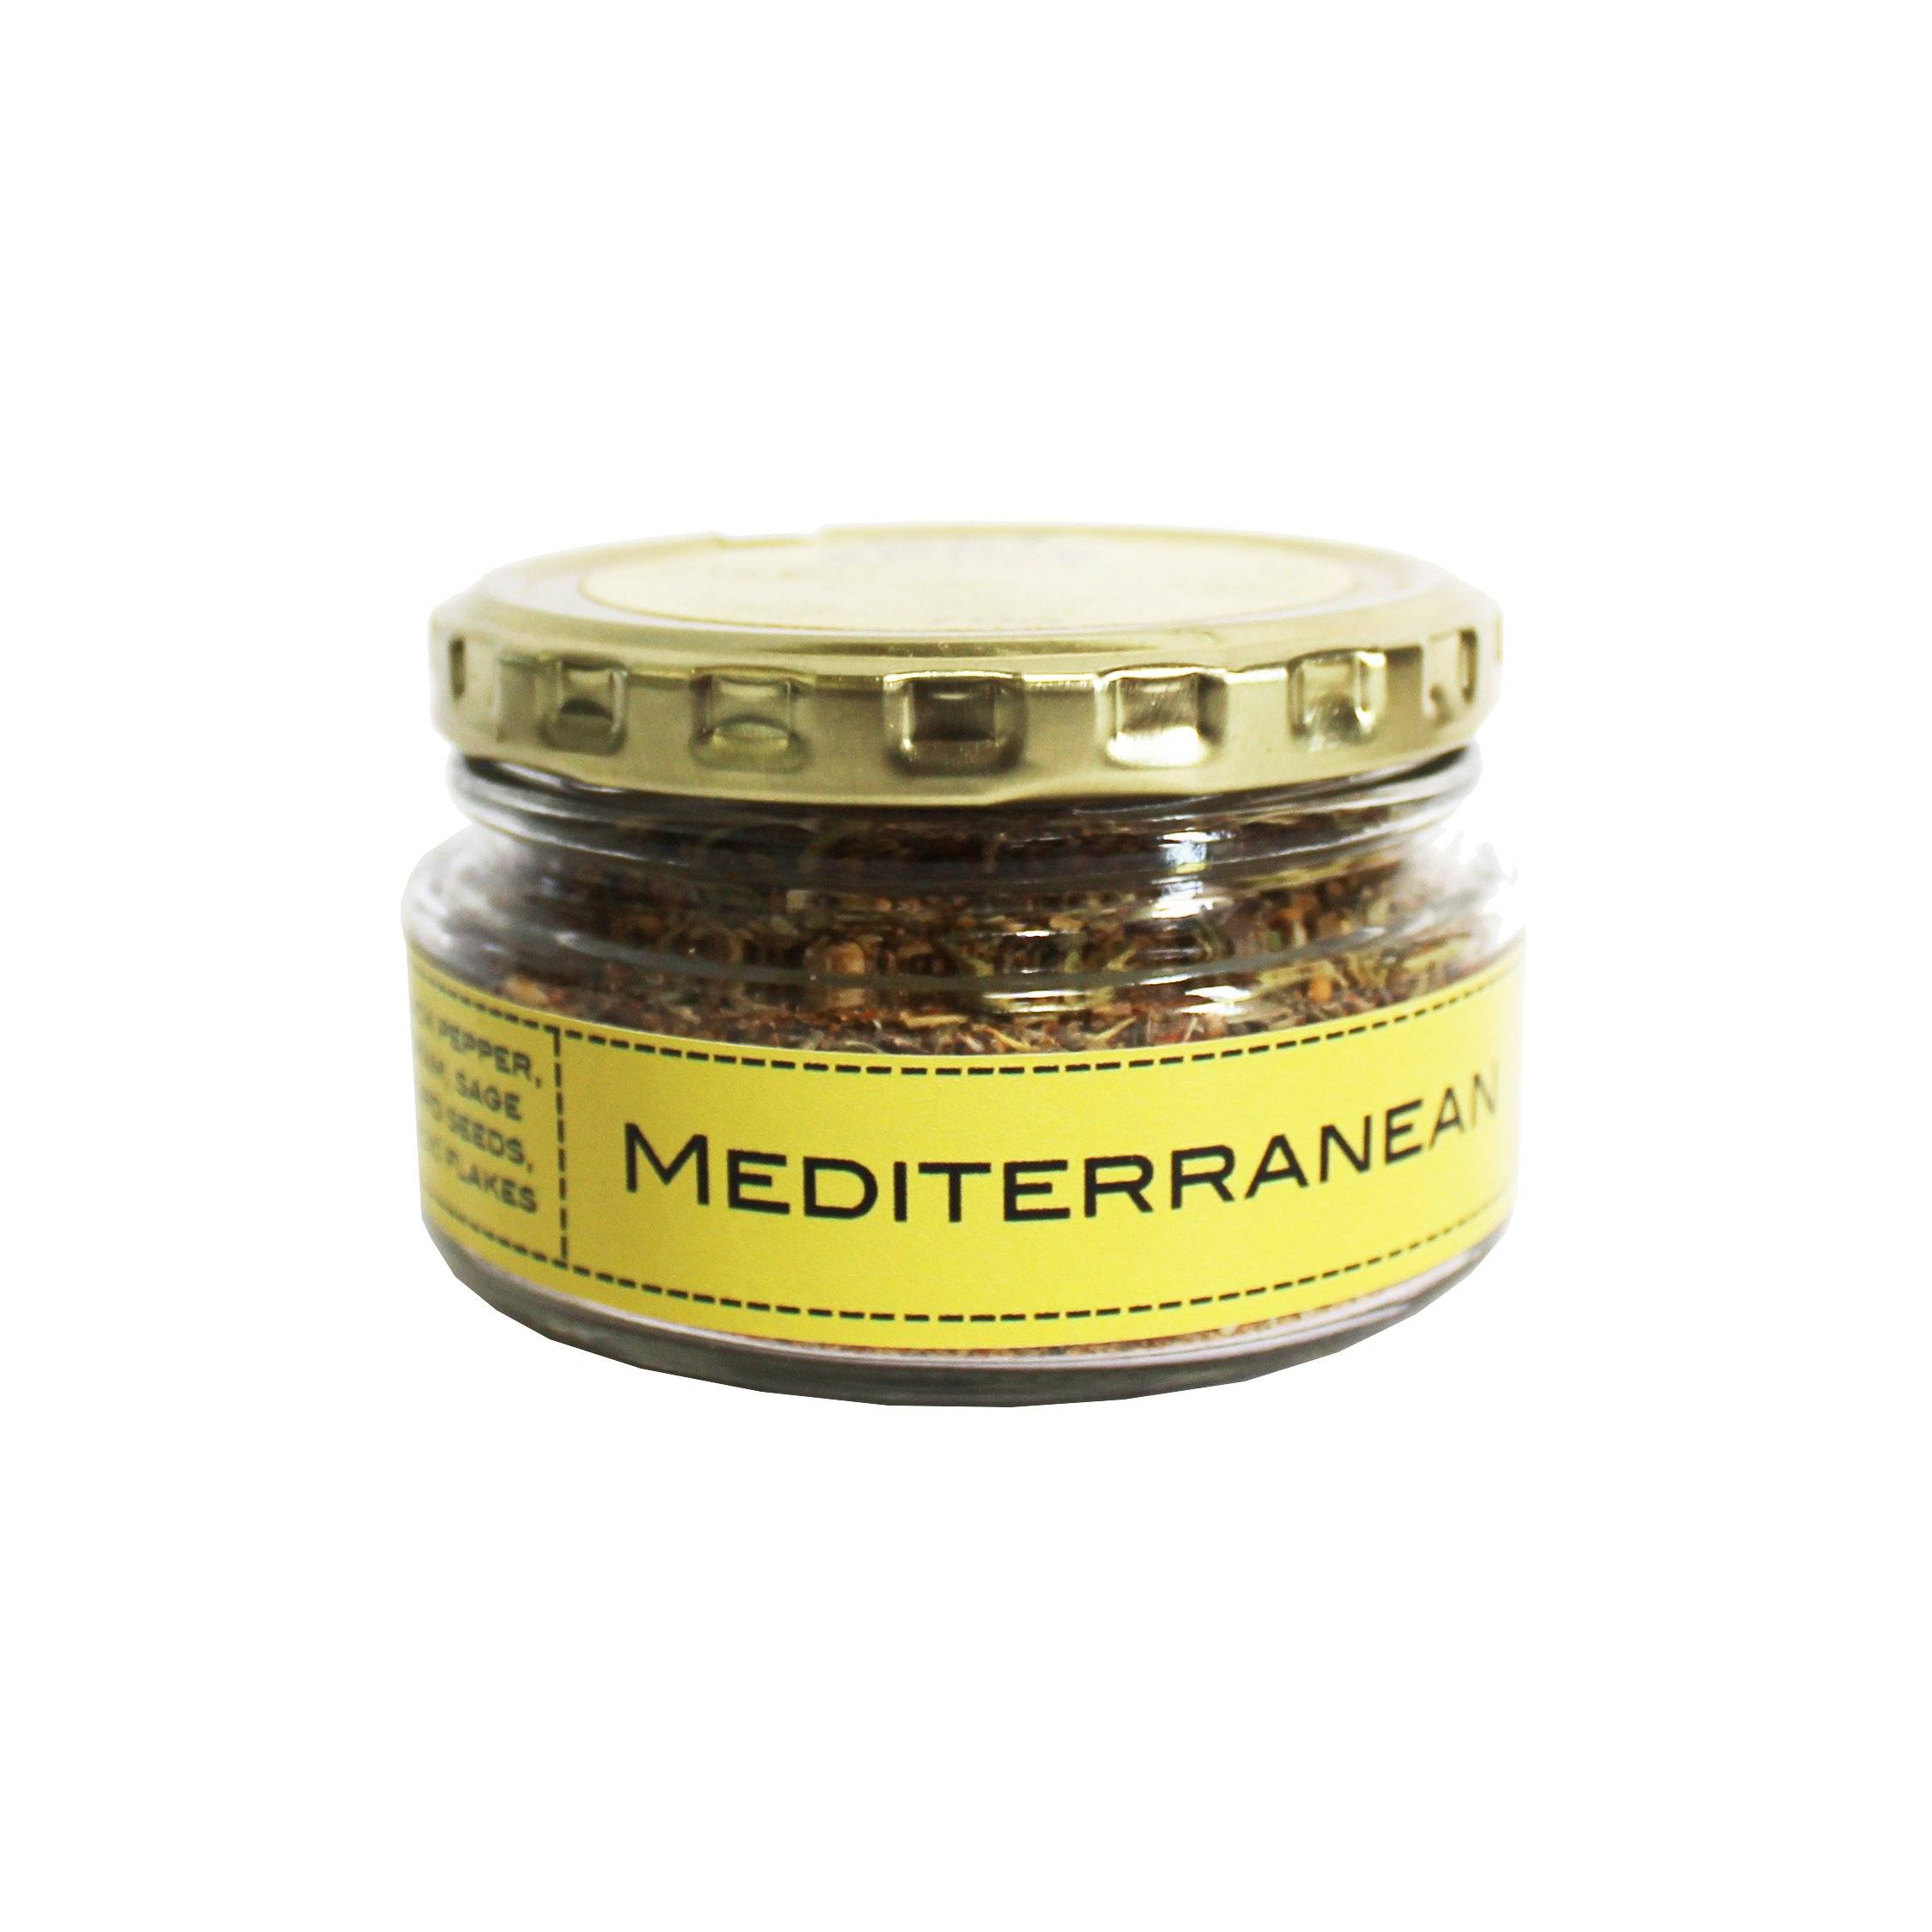 Get Spice Mediterranean Rub 70g Salts, Herbs & Spices Get Spice 